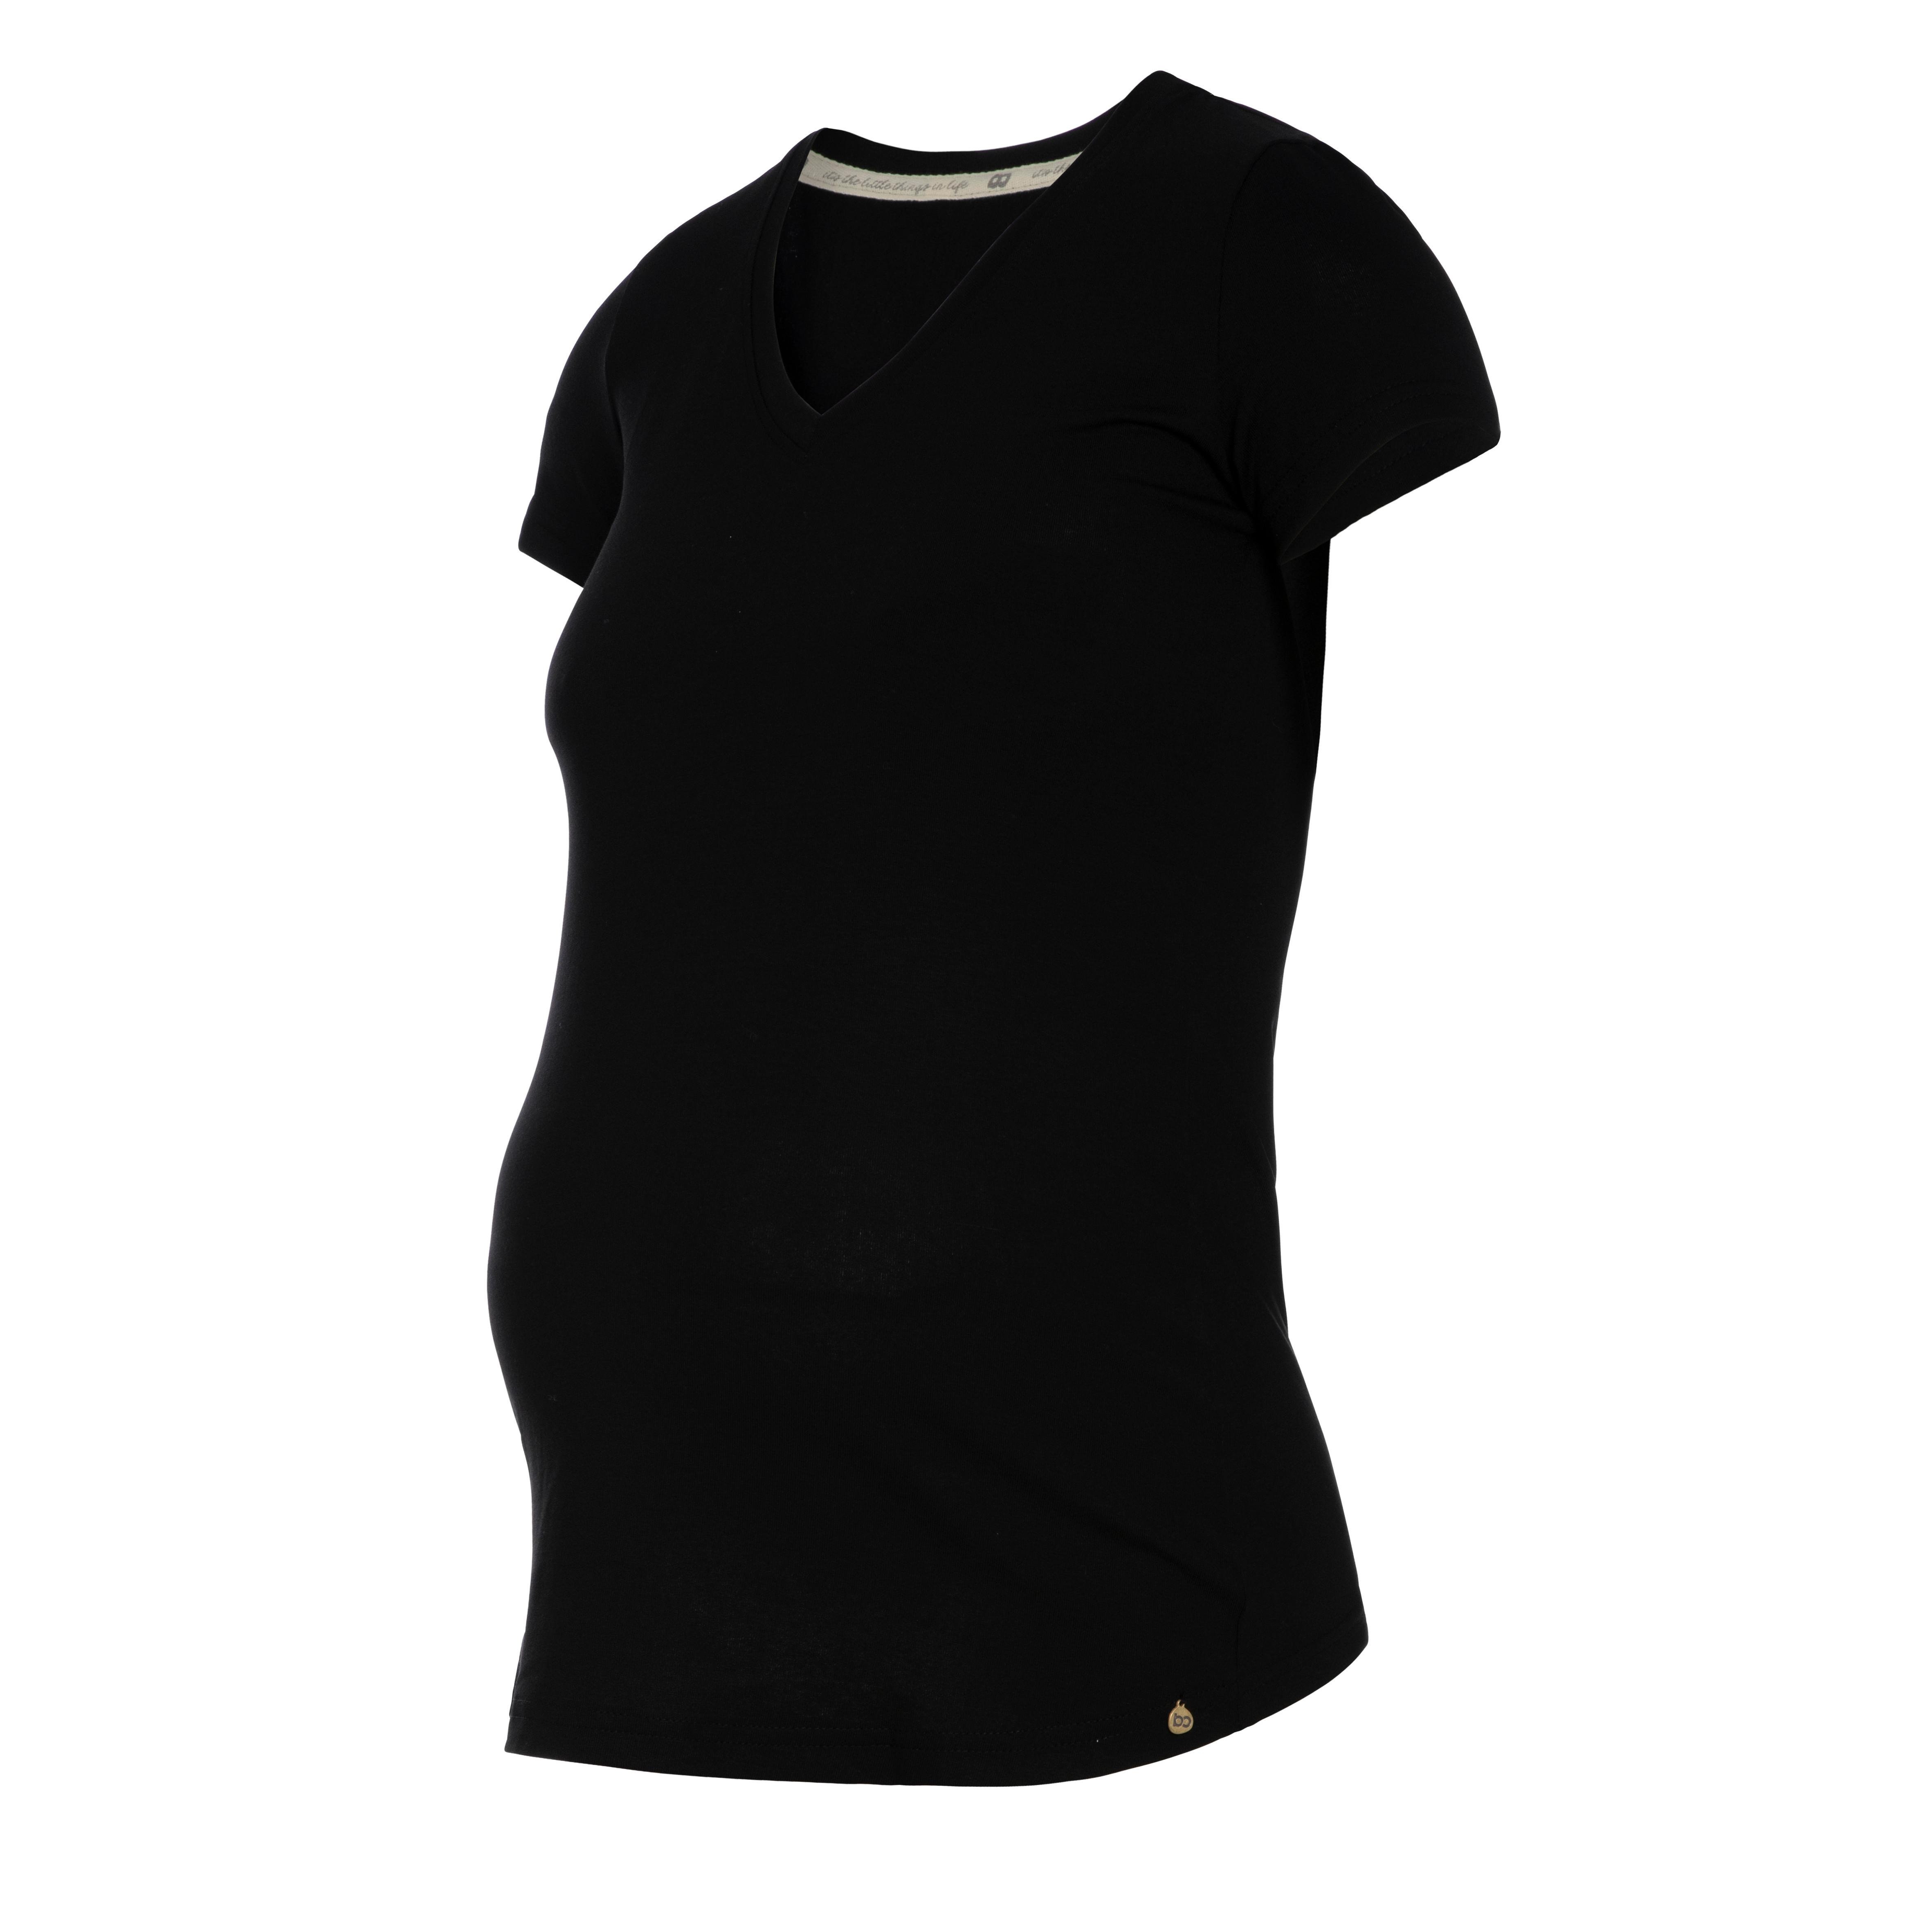 T-shirt de maternité Glow noir - L